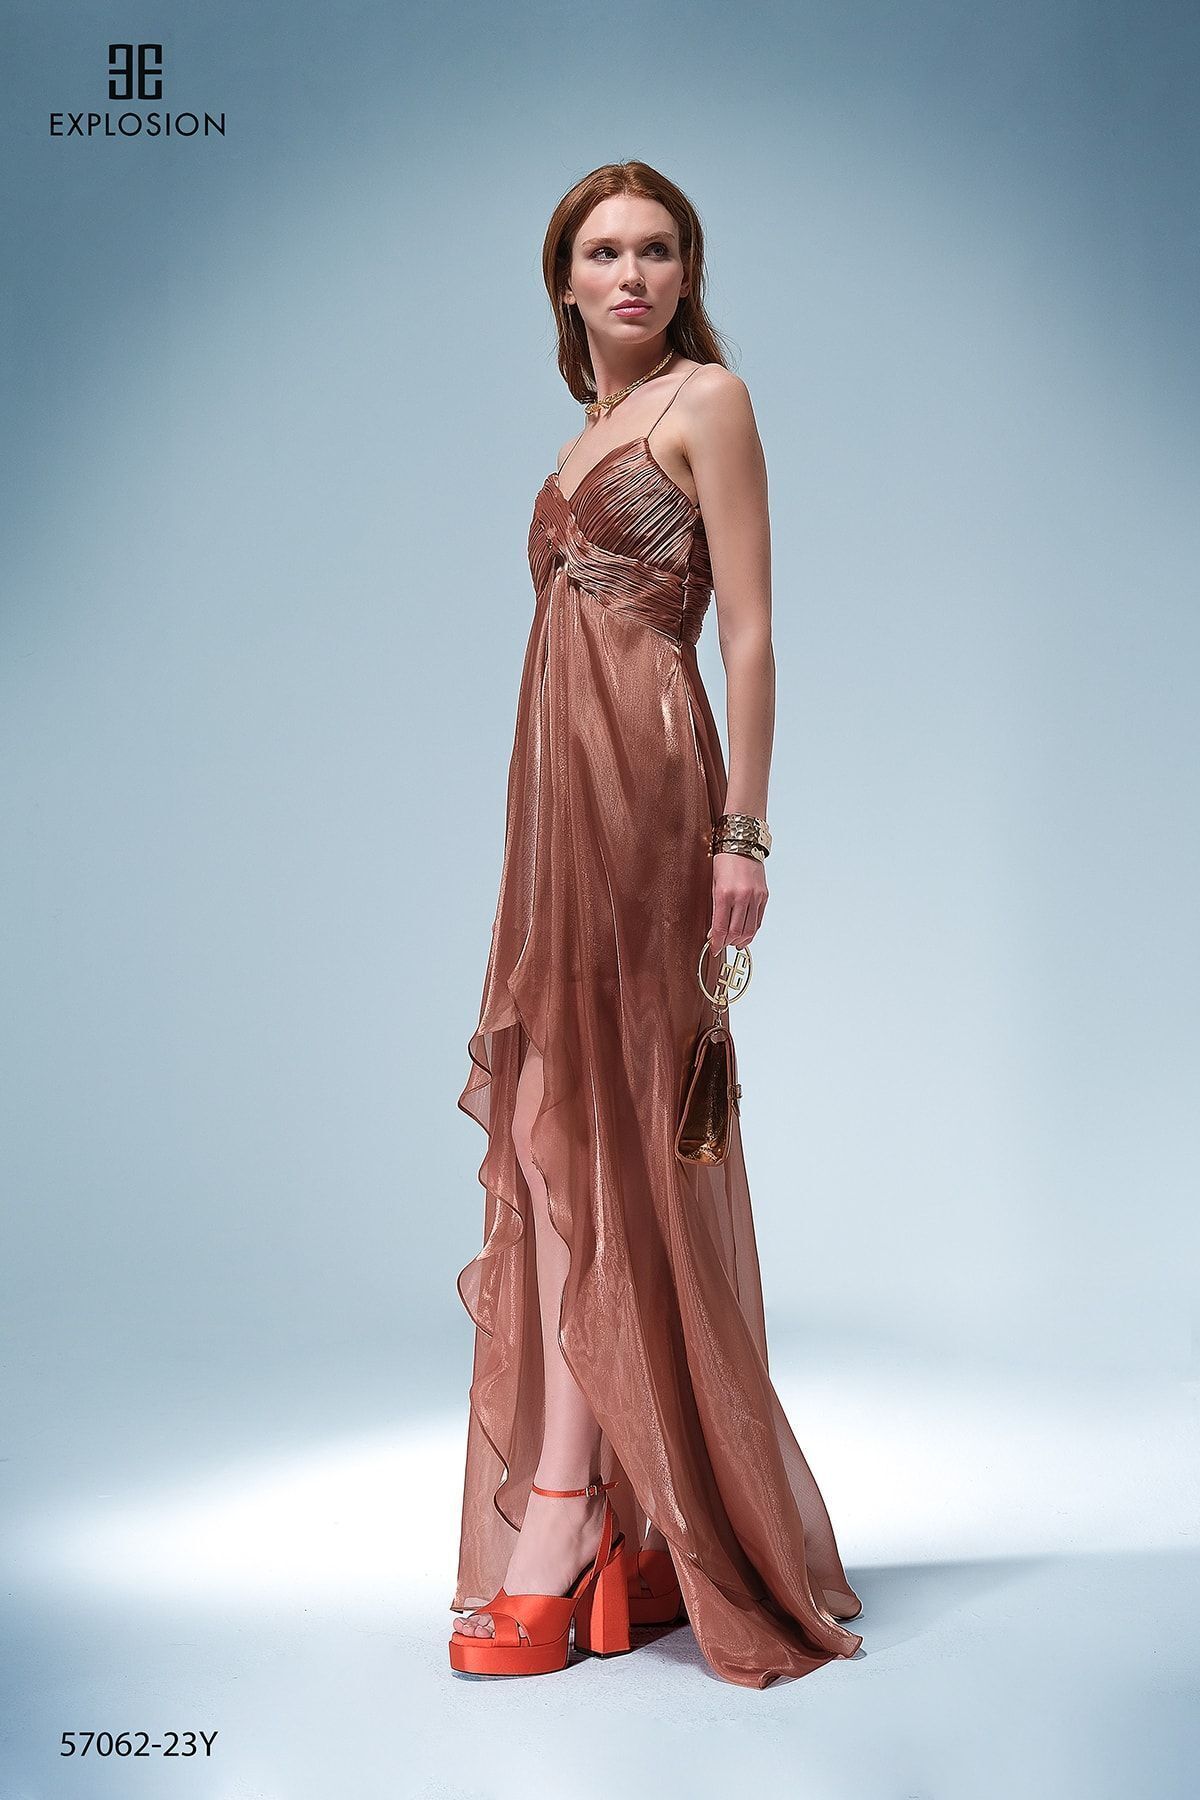 EXPLOSION Kadın Düz Saten Uzun Ip Askılıklı Bakır Elbise Exp57062-bakır